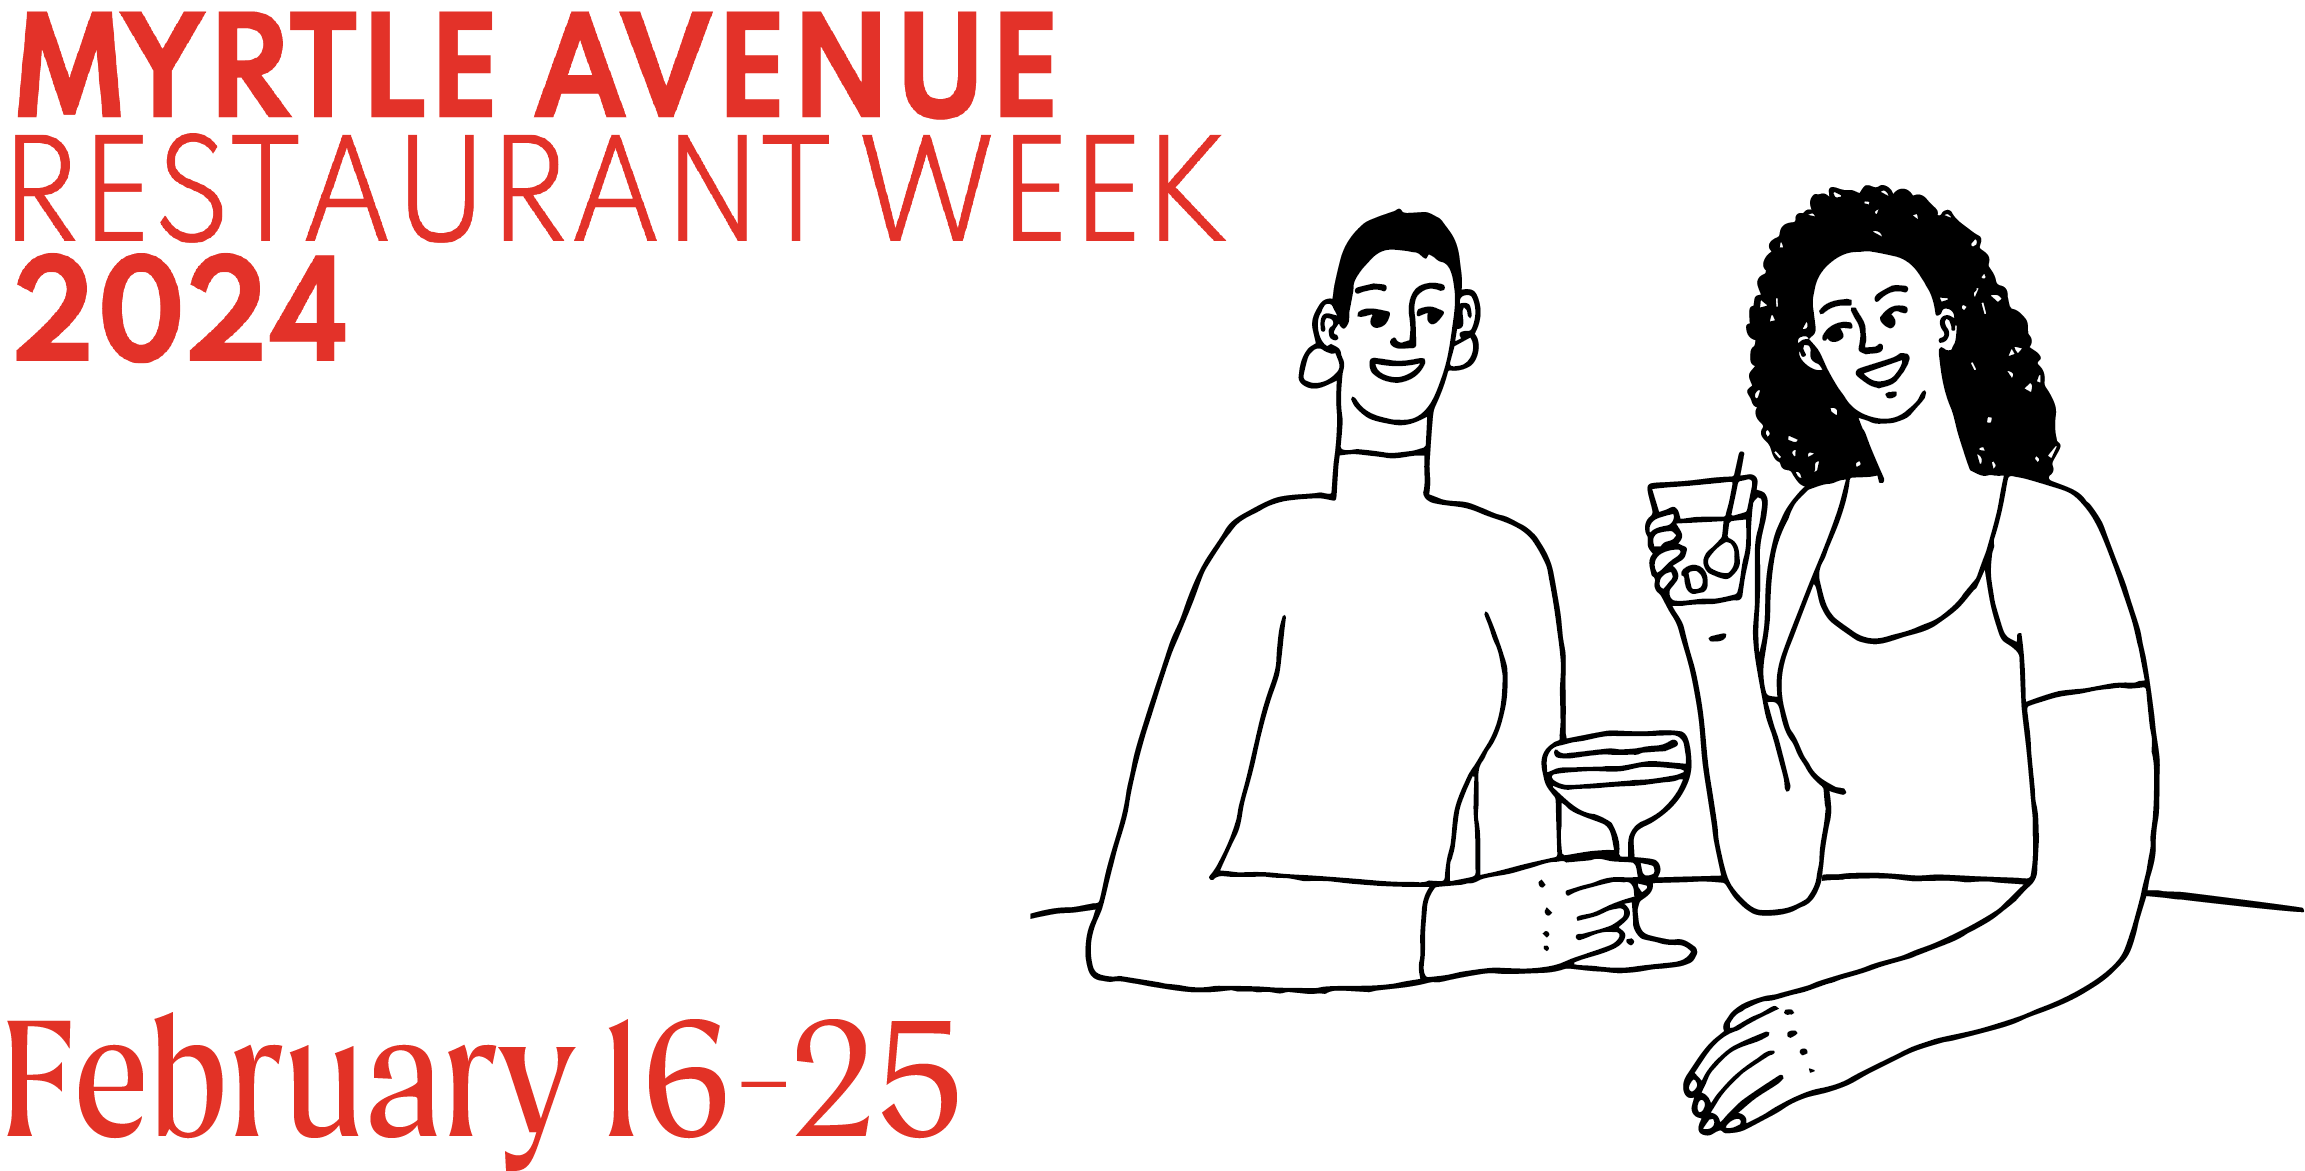 Myrtle Avenue Restaurant Week 2024